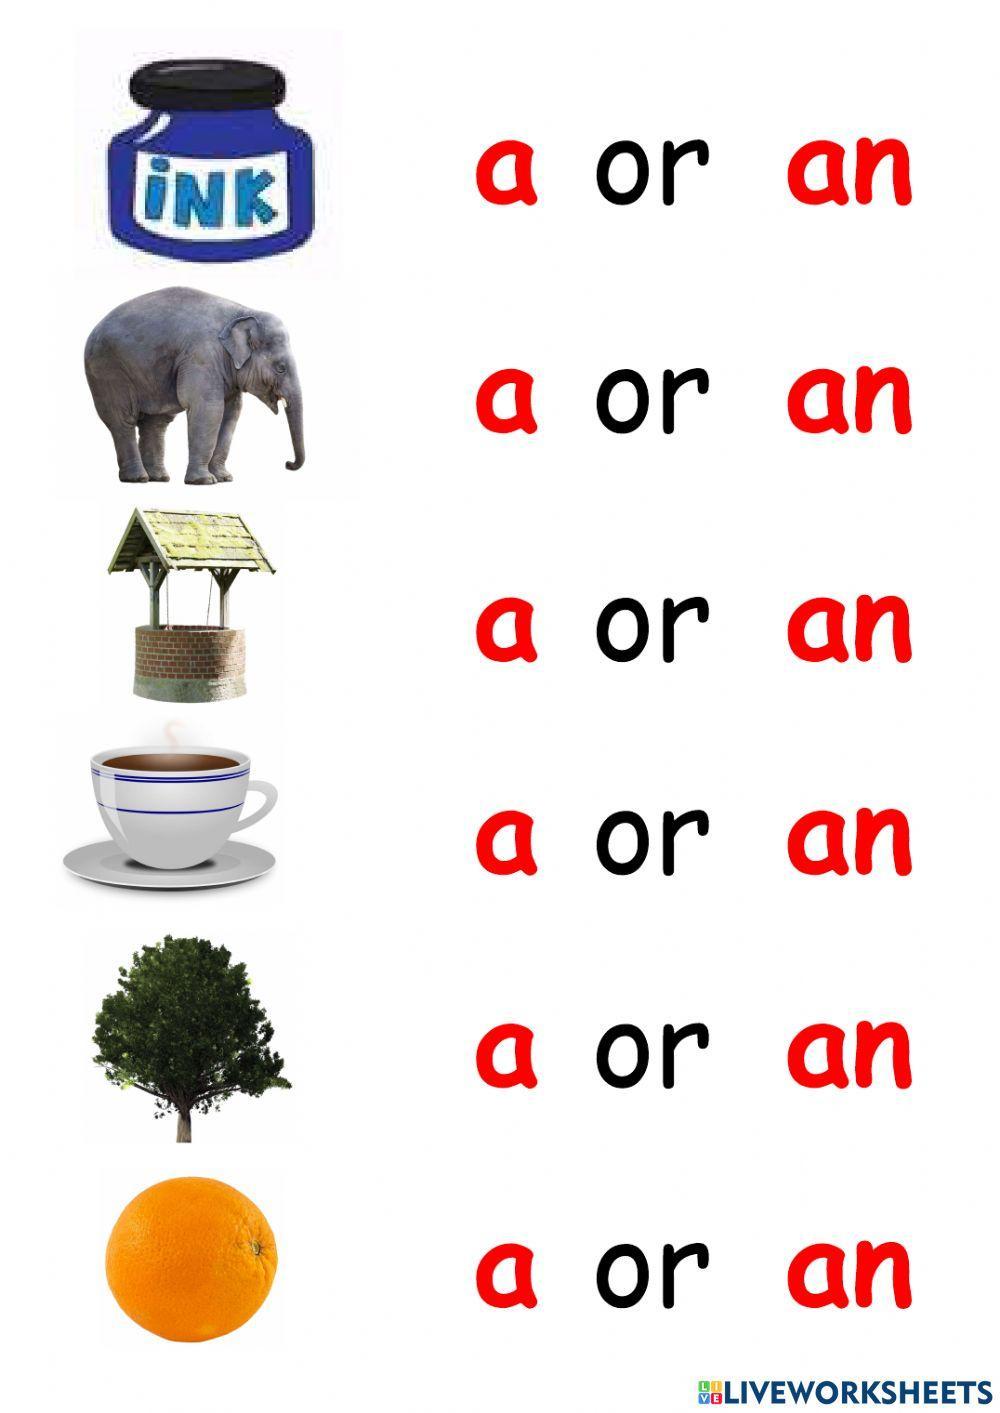 A or an